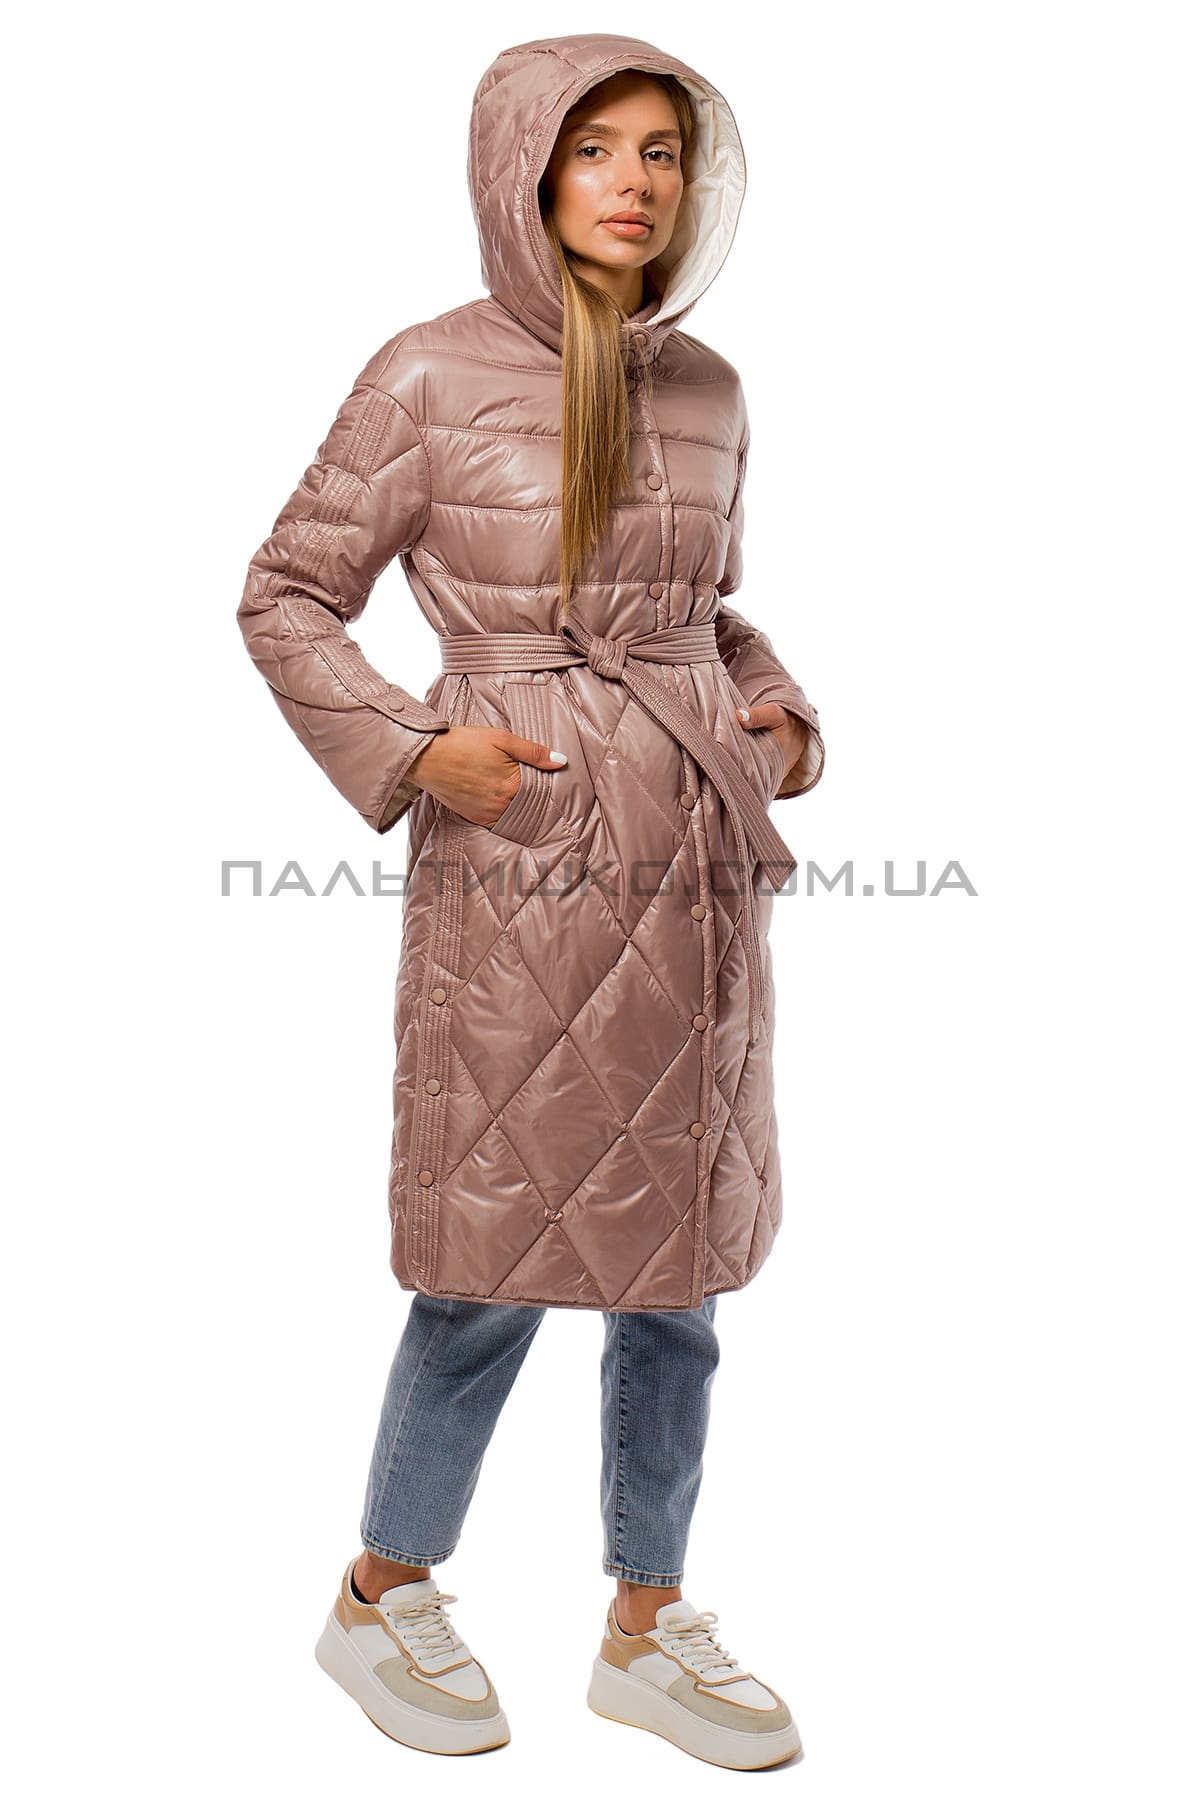  Женкская куртка перламутровая розовая